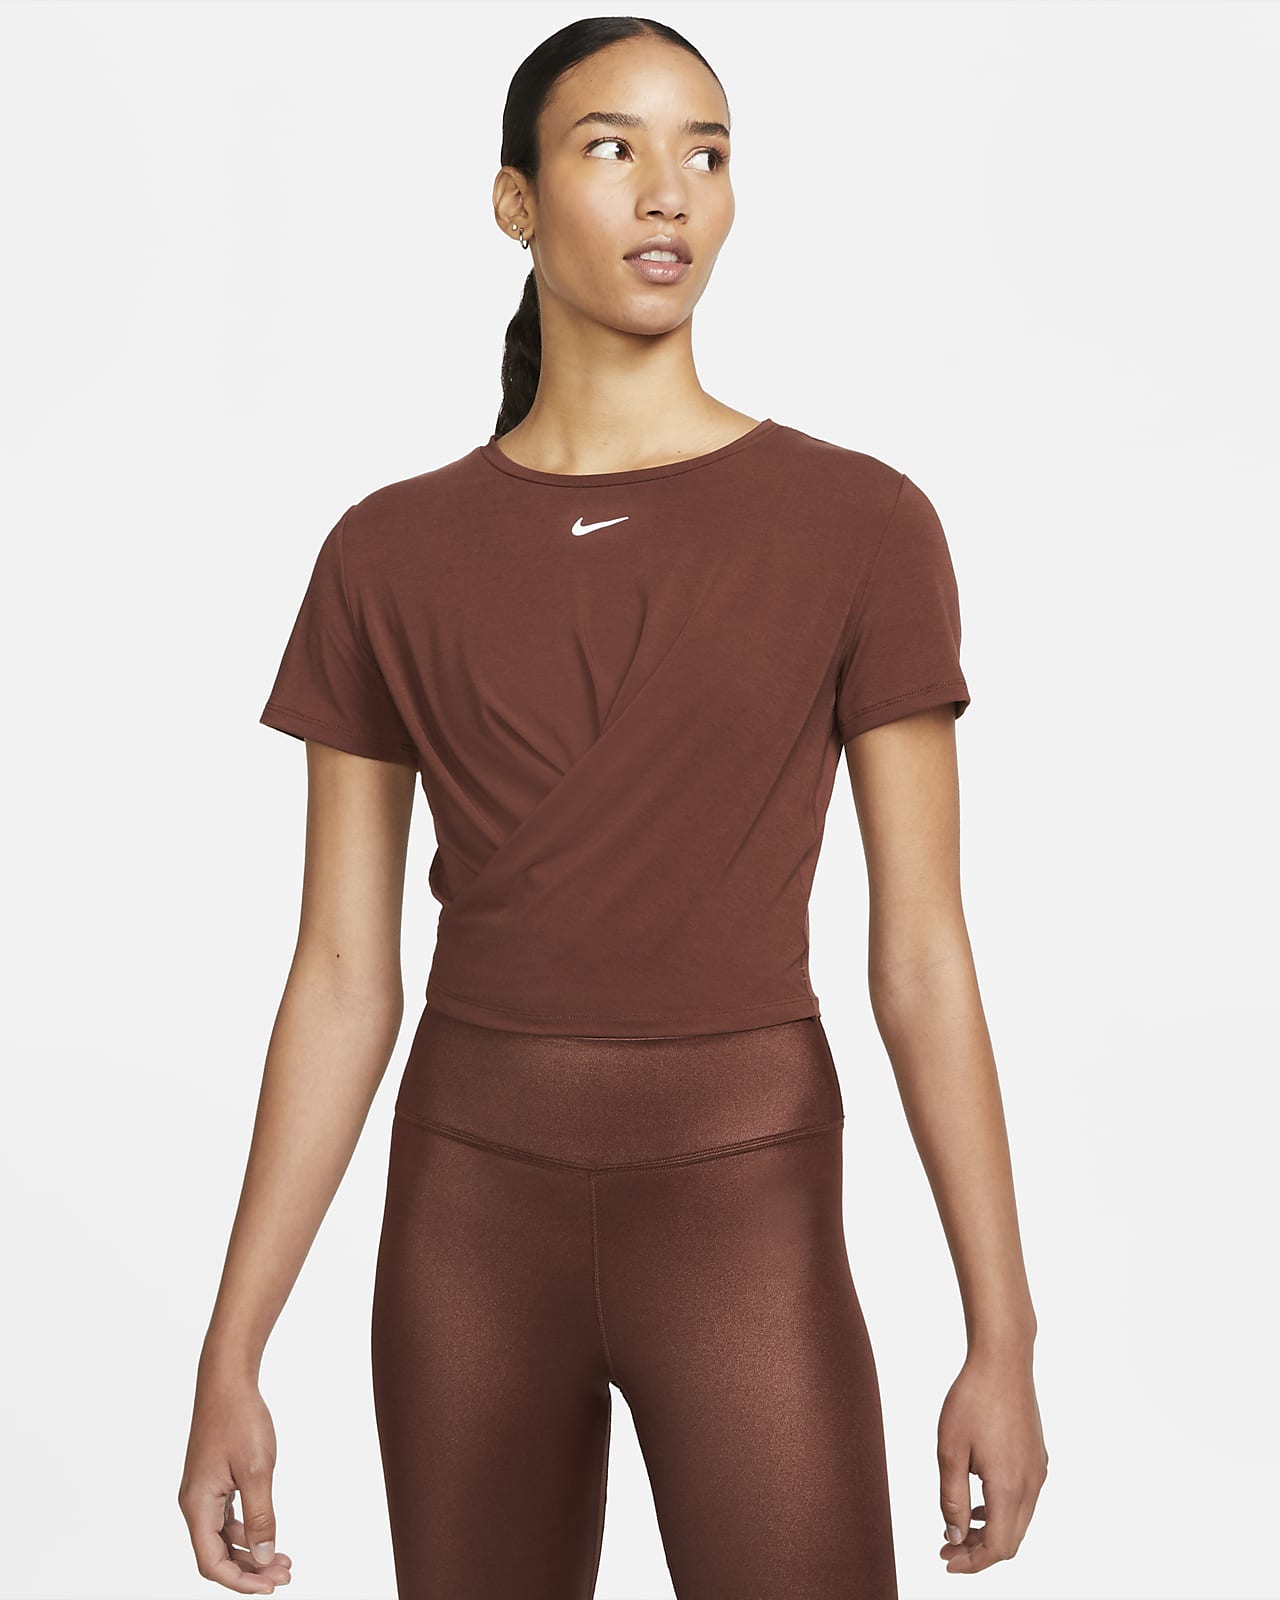 Γυναικεία κρουαζέ κοντομάνικη μπλούζα με κανονική εφαρμογή Nike Dri-FIT One Luxe